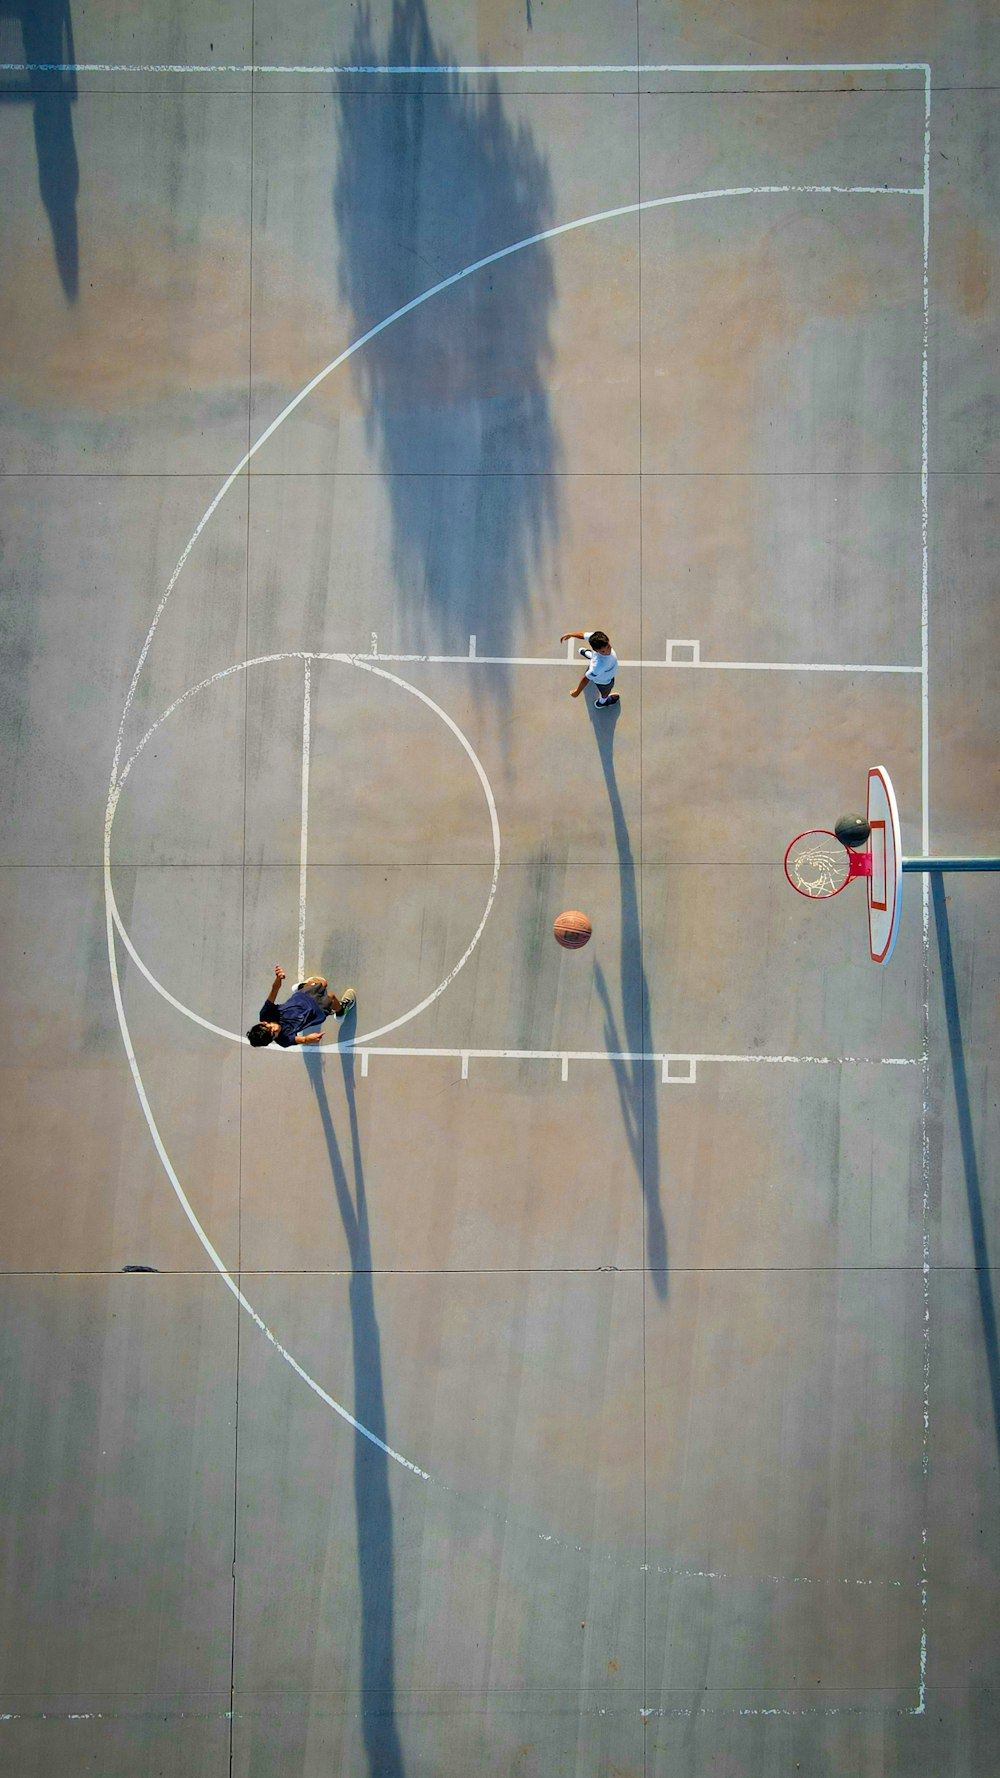 농구 코트에서 농구를 하는 두 사람